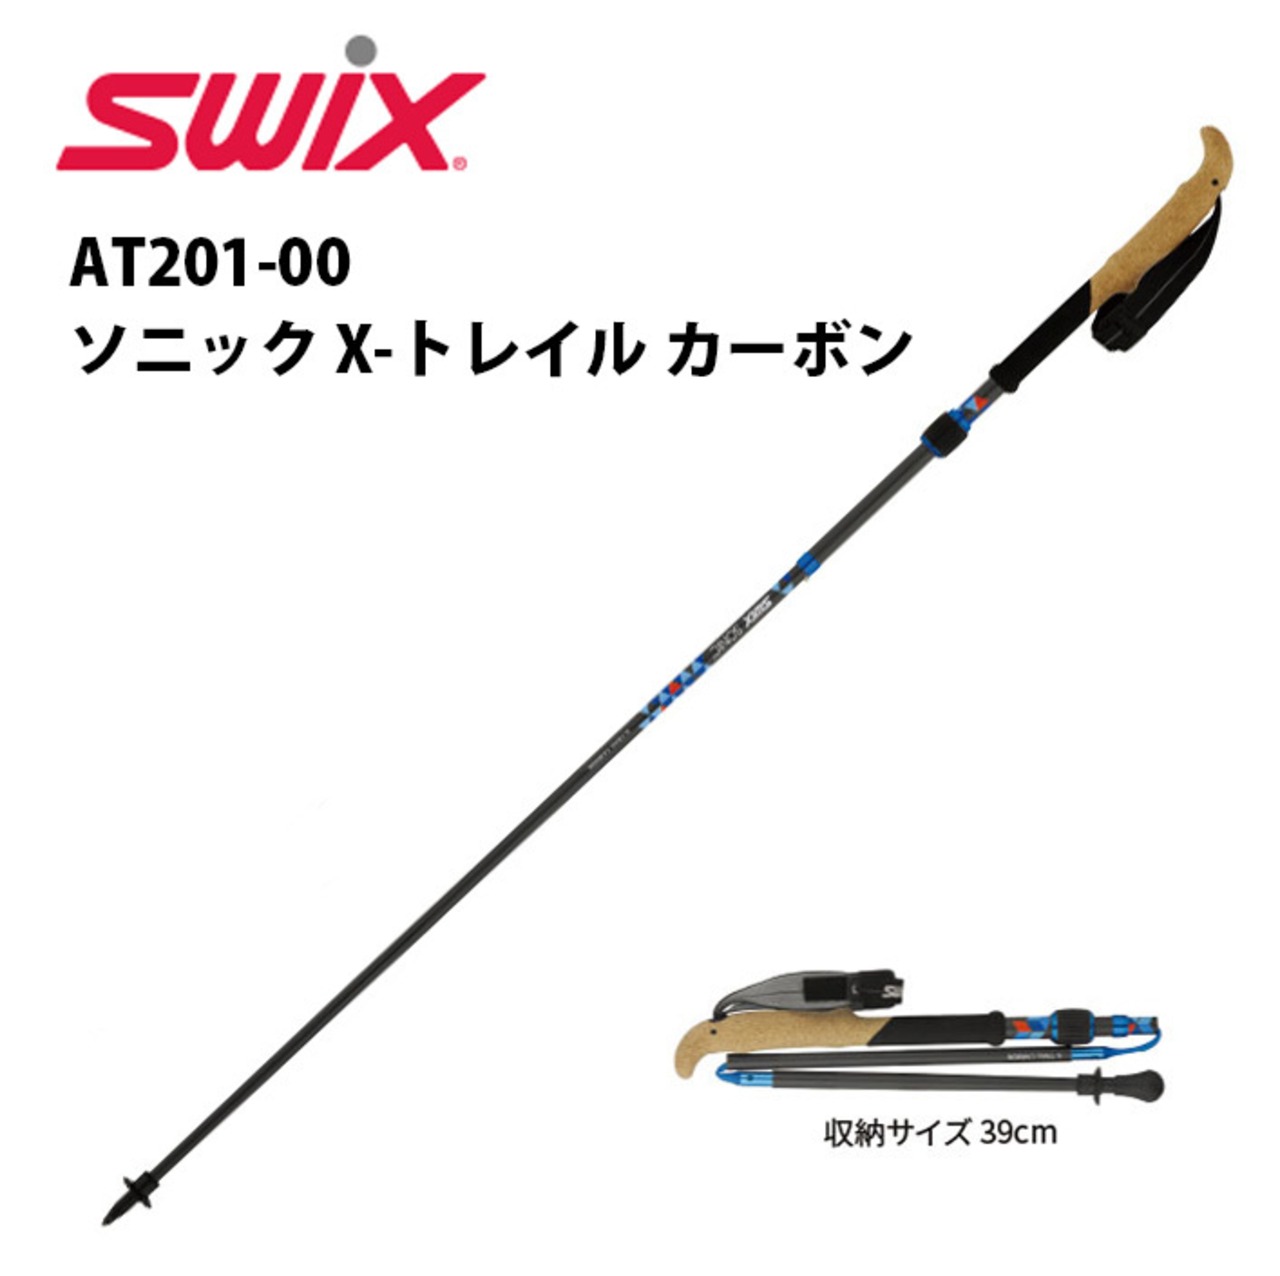 AT201-00 Swix スウィックス ソニック X-トレイル カーボン